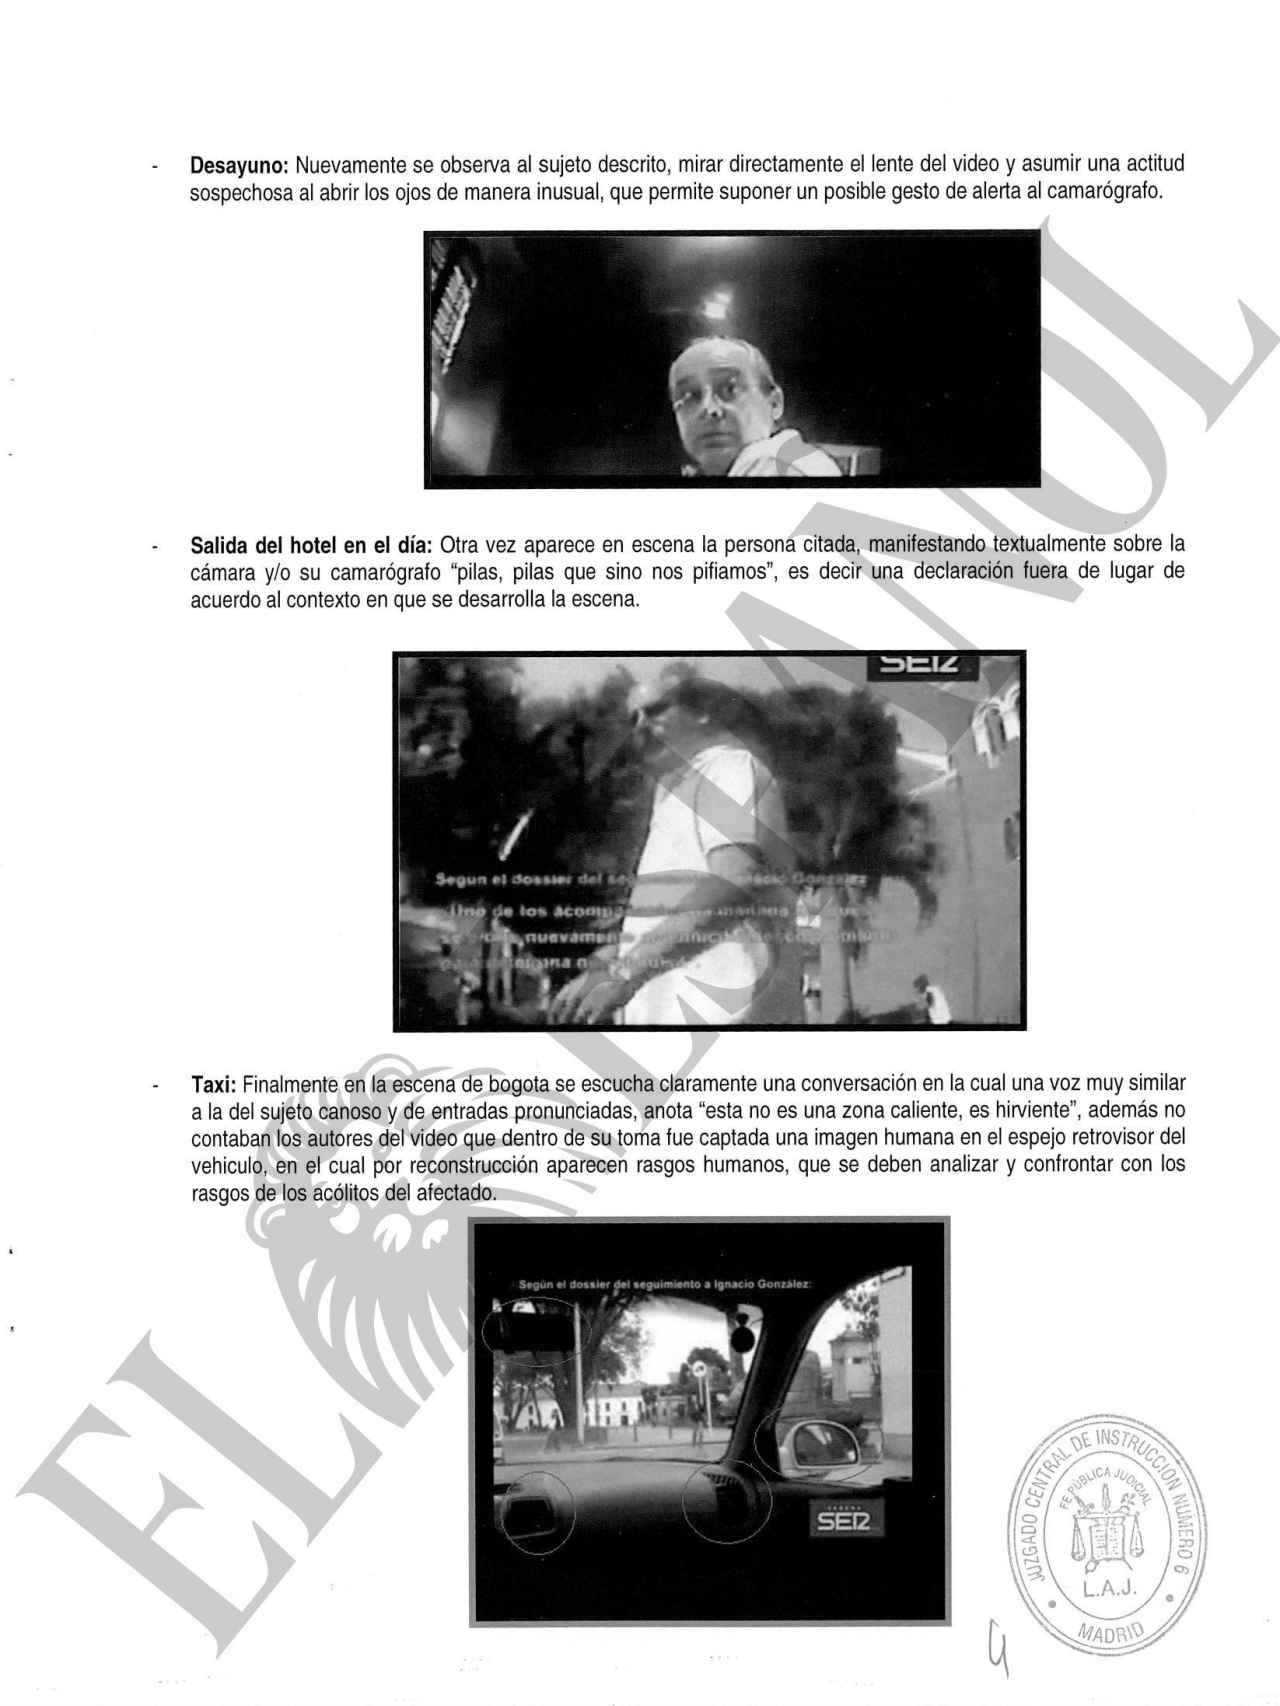 Una de las páginas del informe donde se analiza el comportamiento de Rodríguez Sobrino.